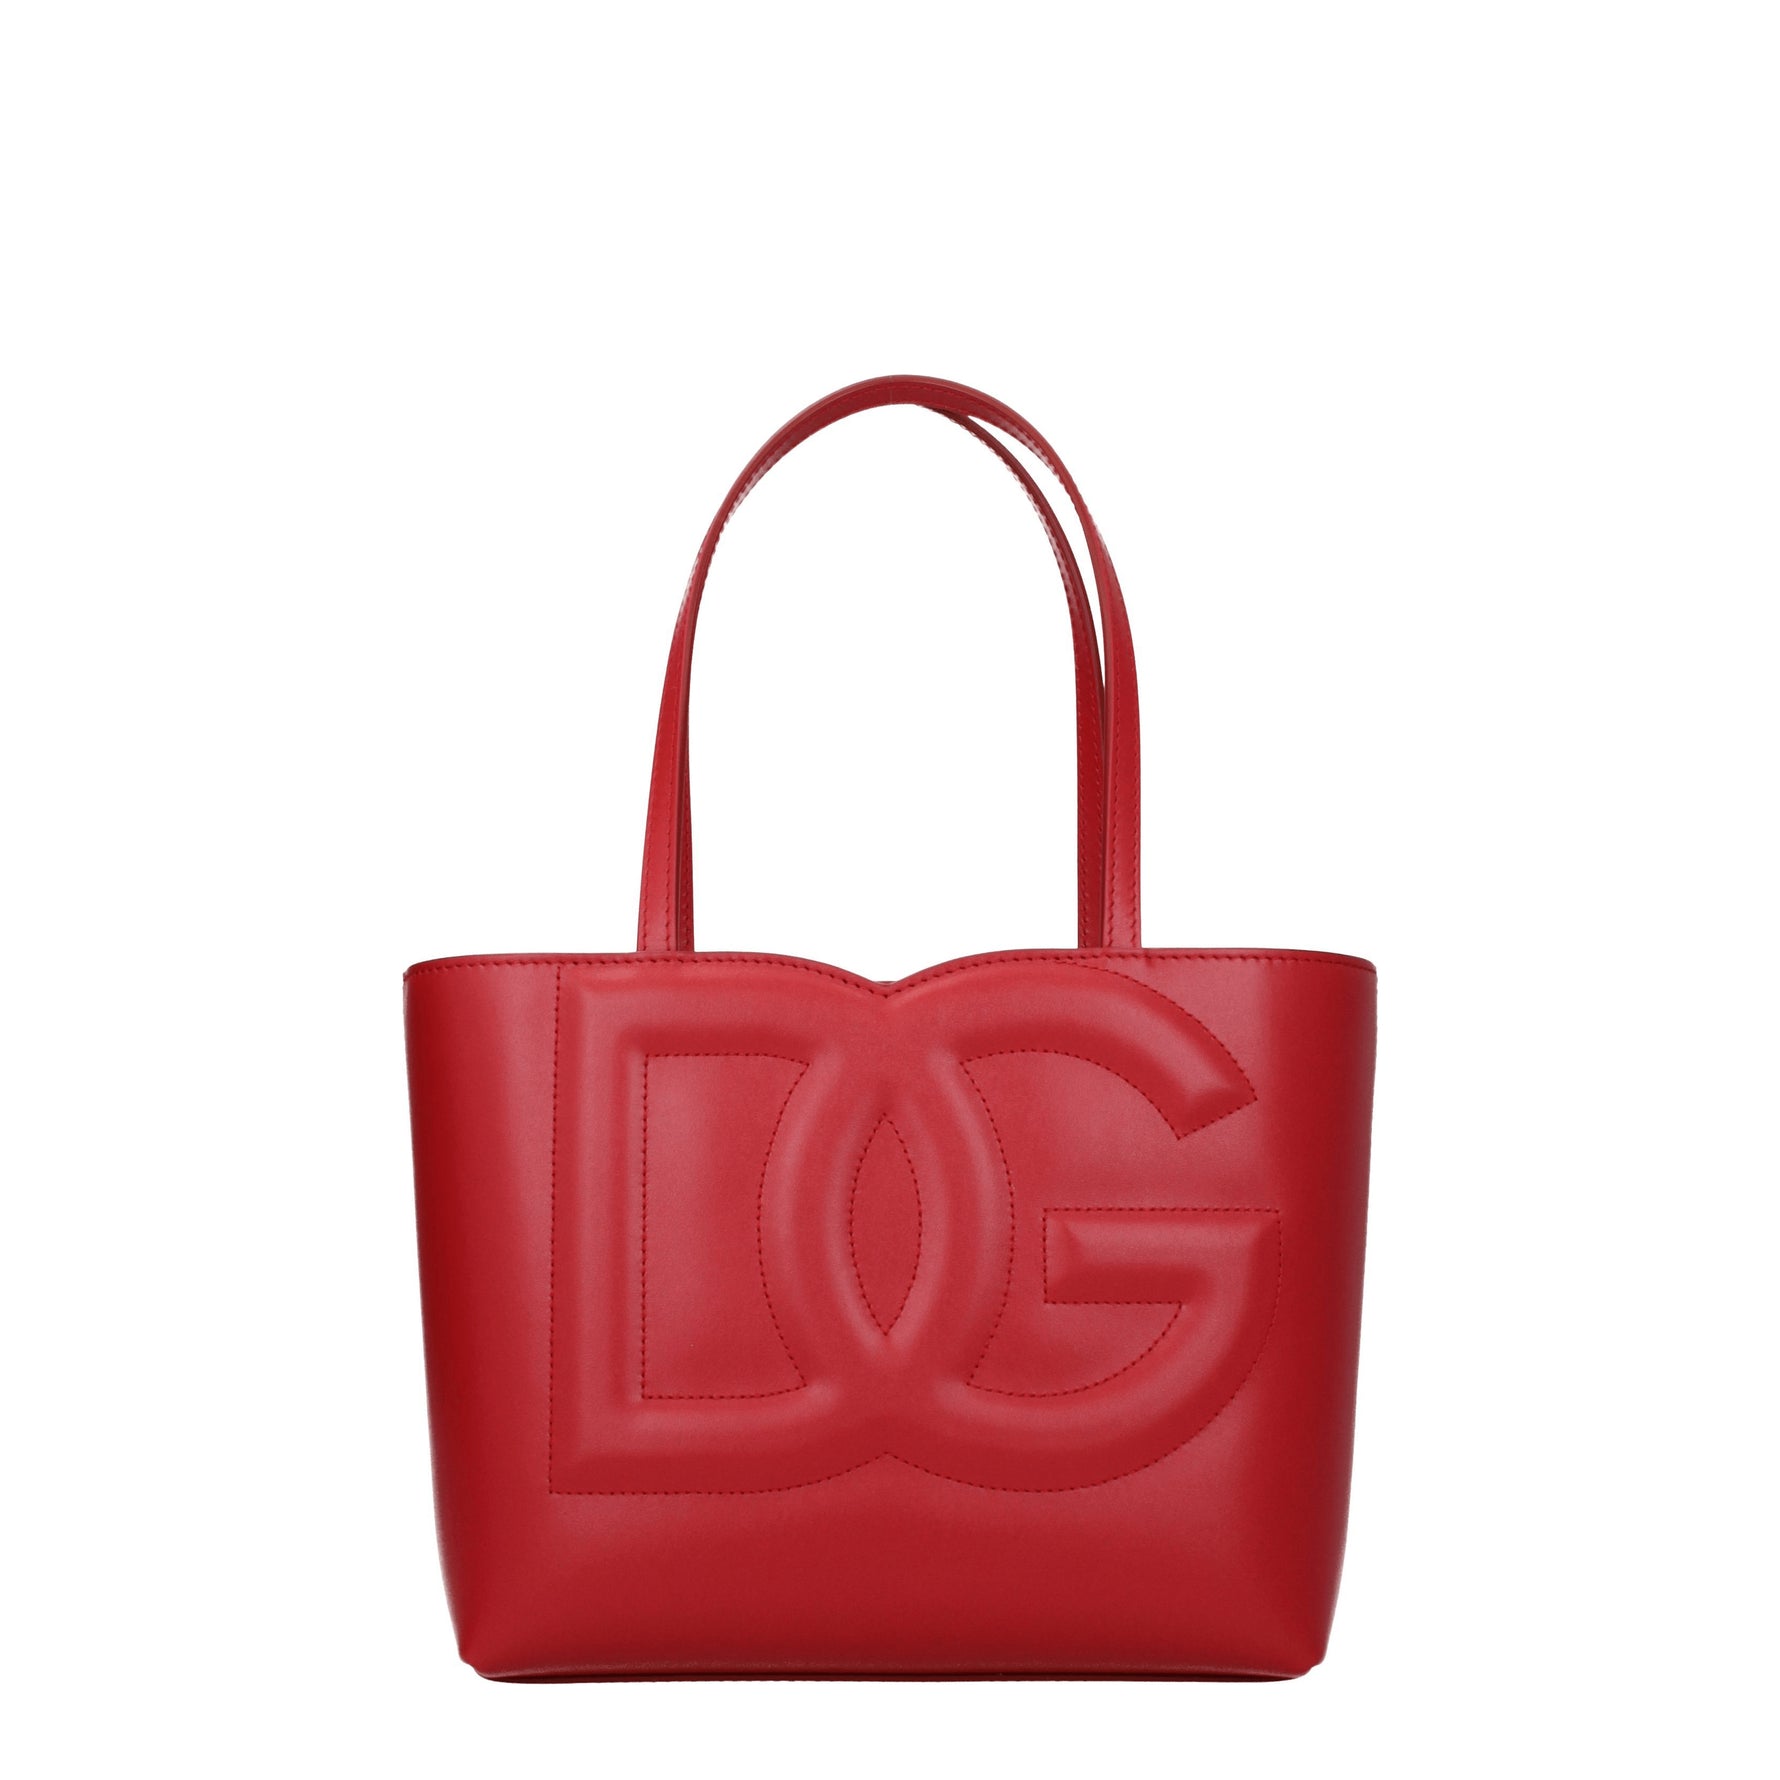 Dolce&Gabbana Borse a Mano Donna Pelle Rosso Rosso Scuro